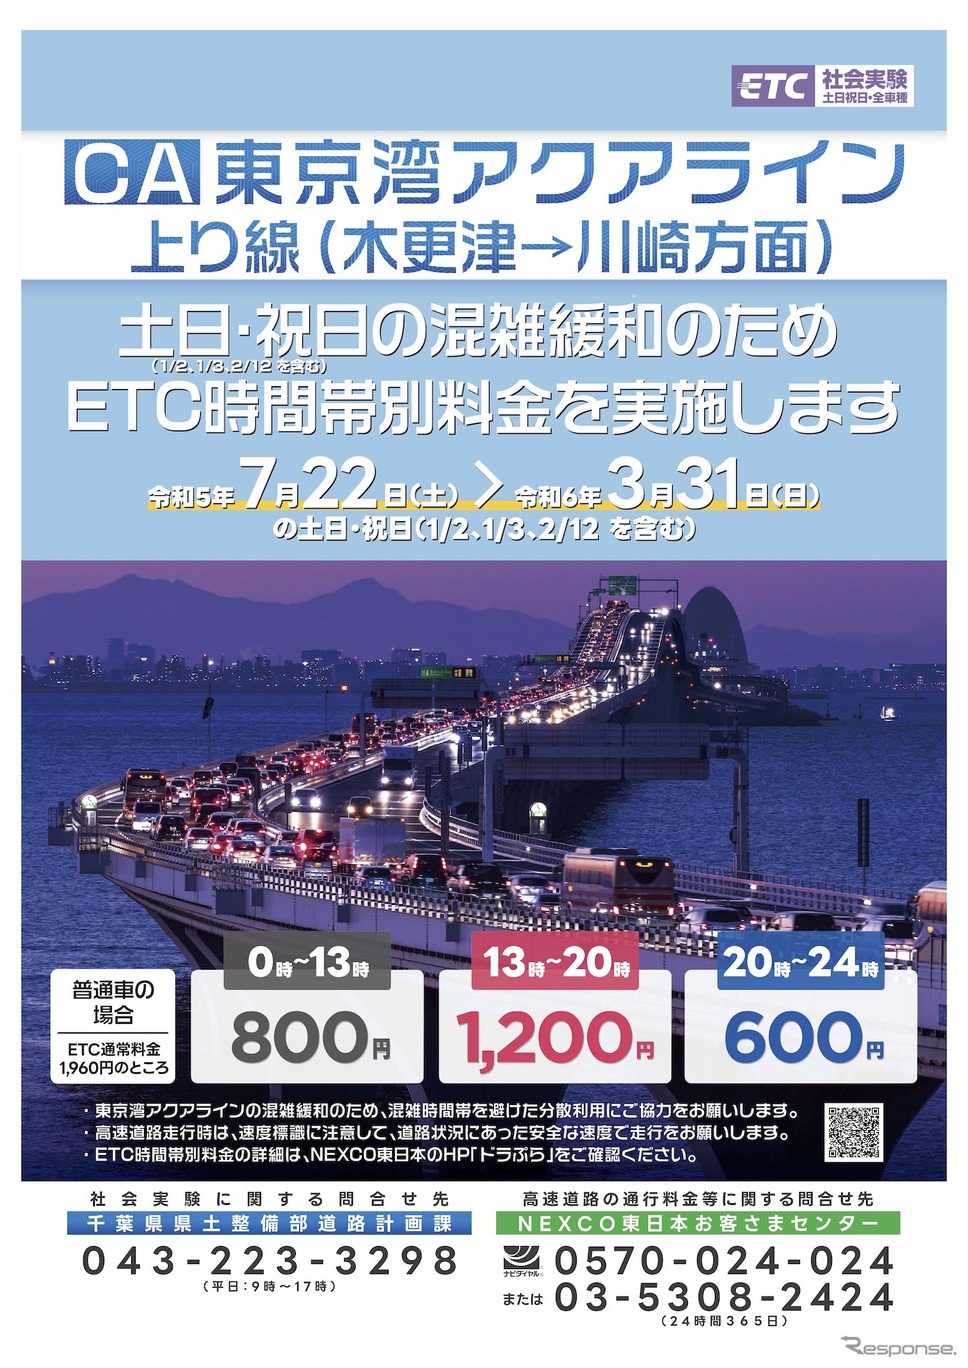 東京湾アクアライン上り線におけるETC時間帯別料金の実施について《画像提供 国土交通省》